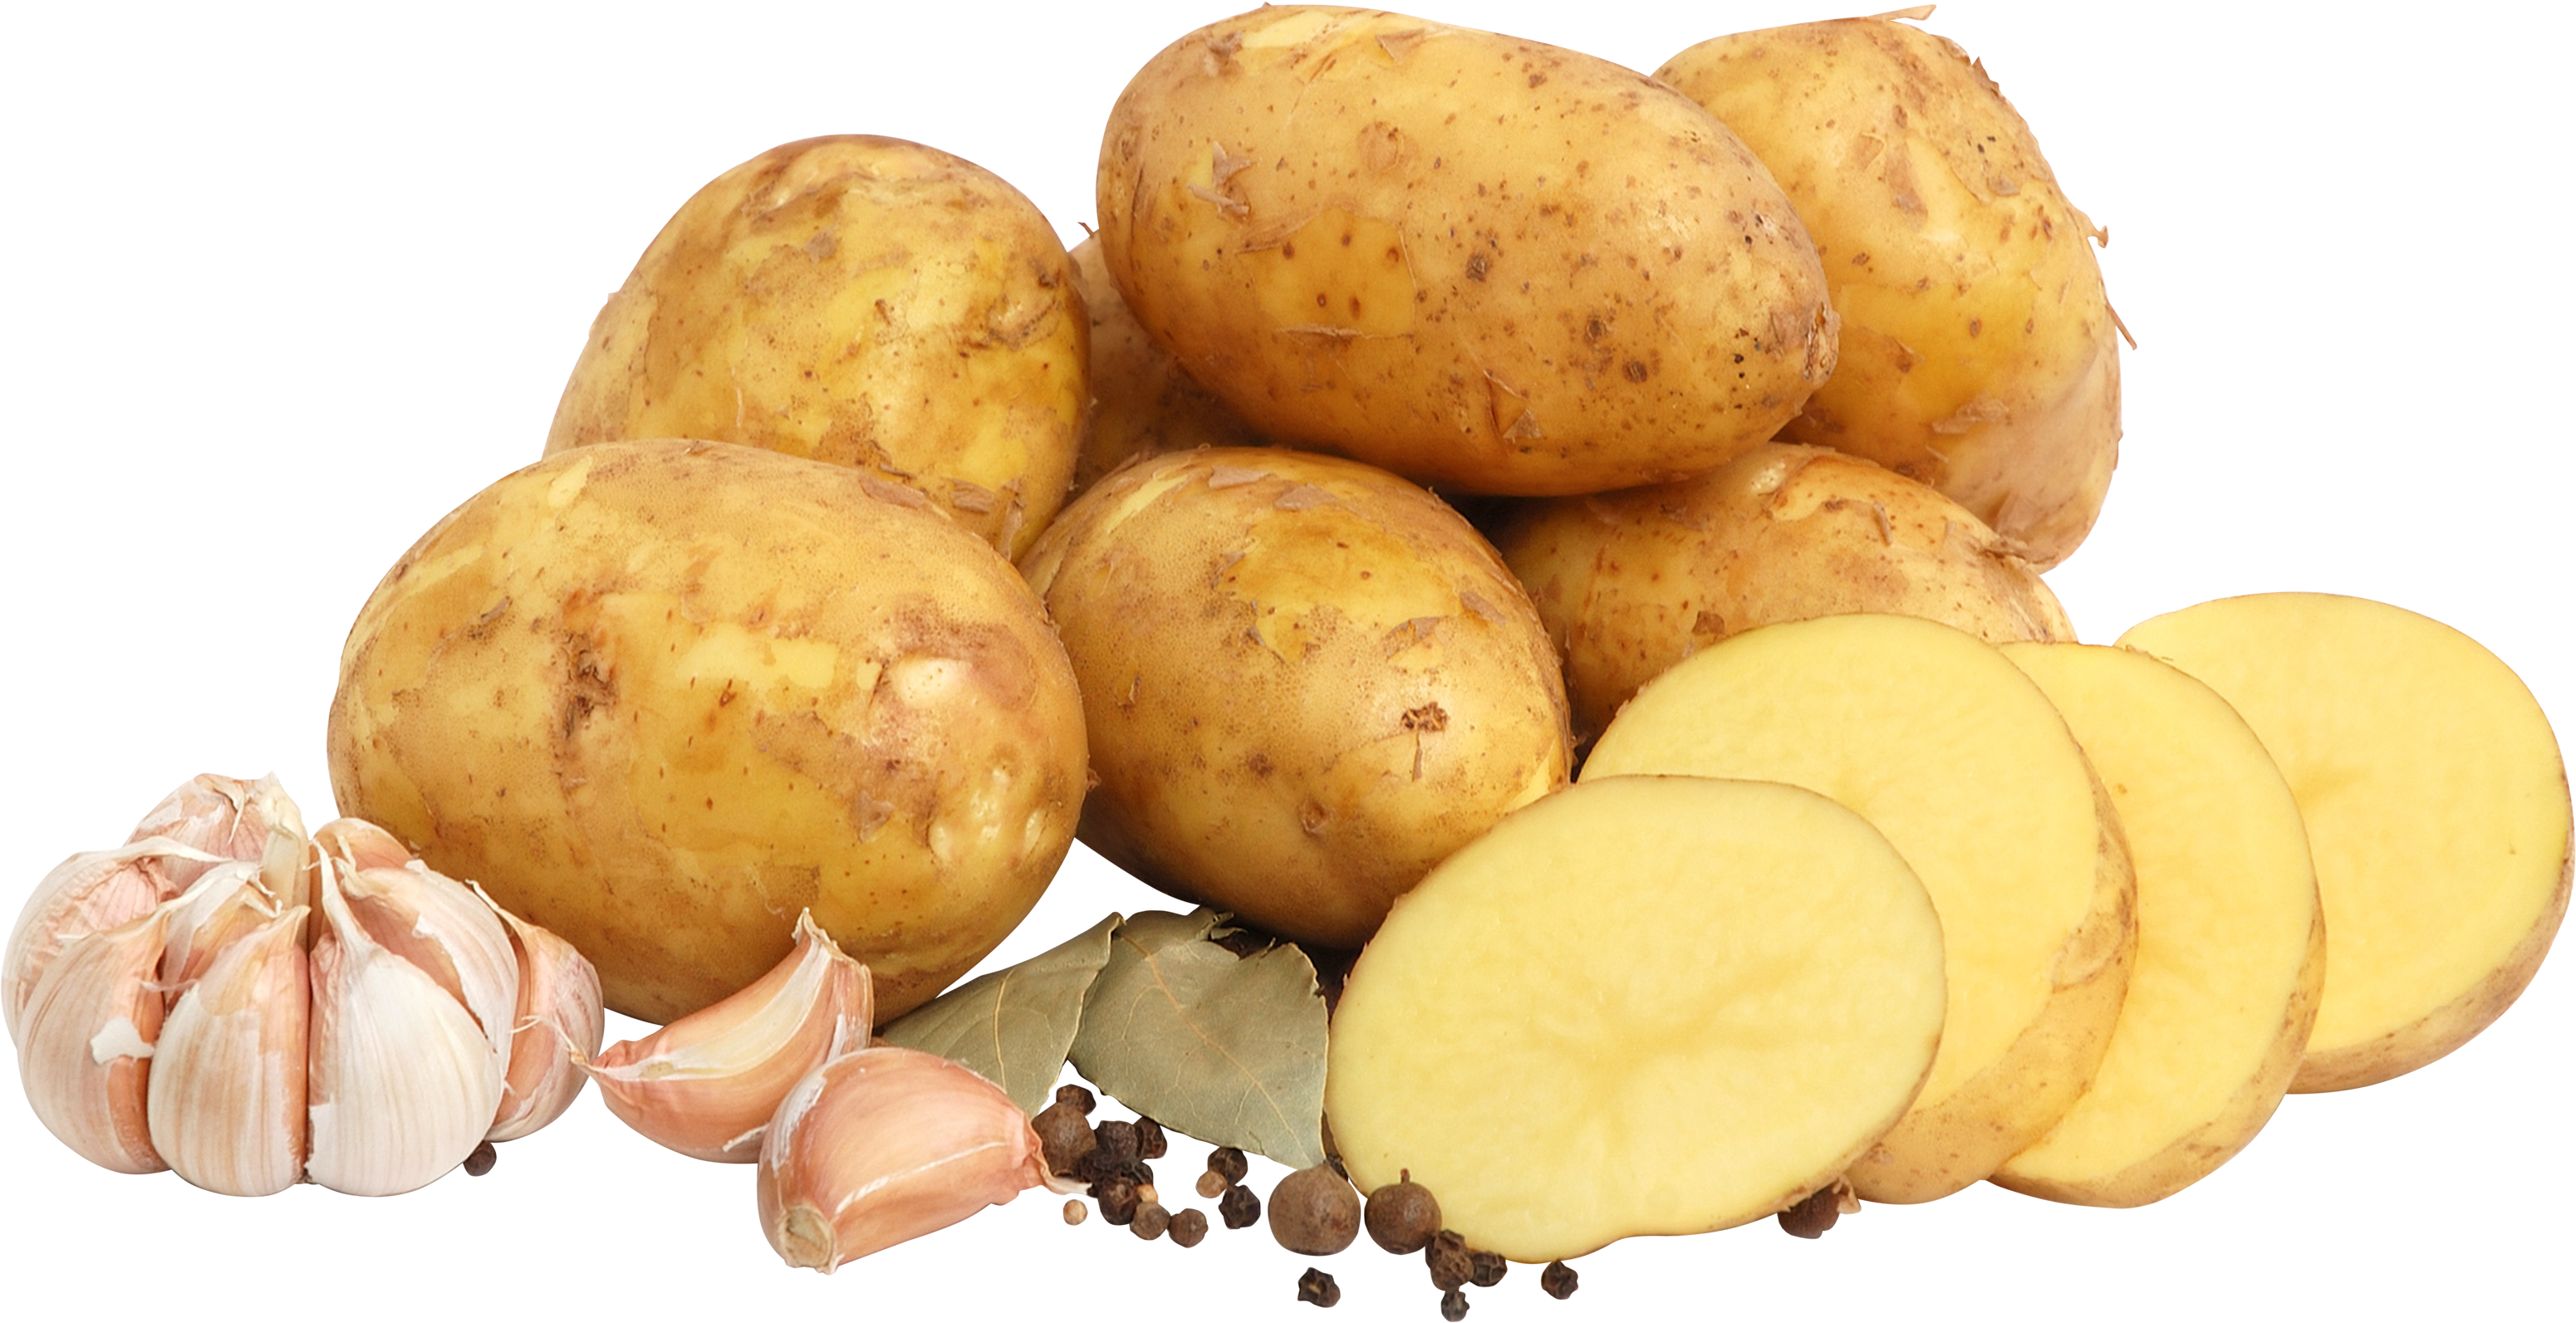 Banyak kentang